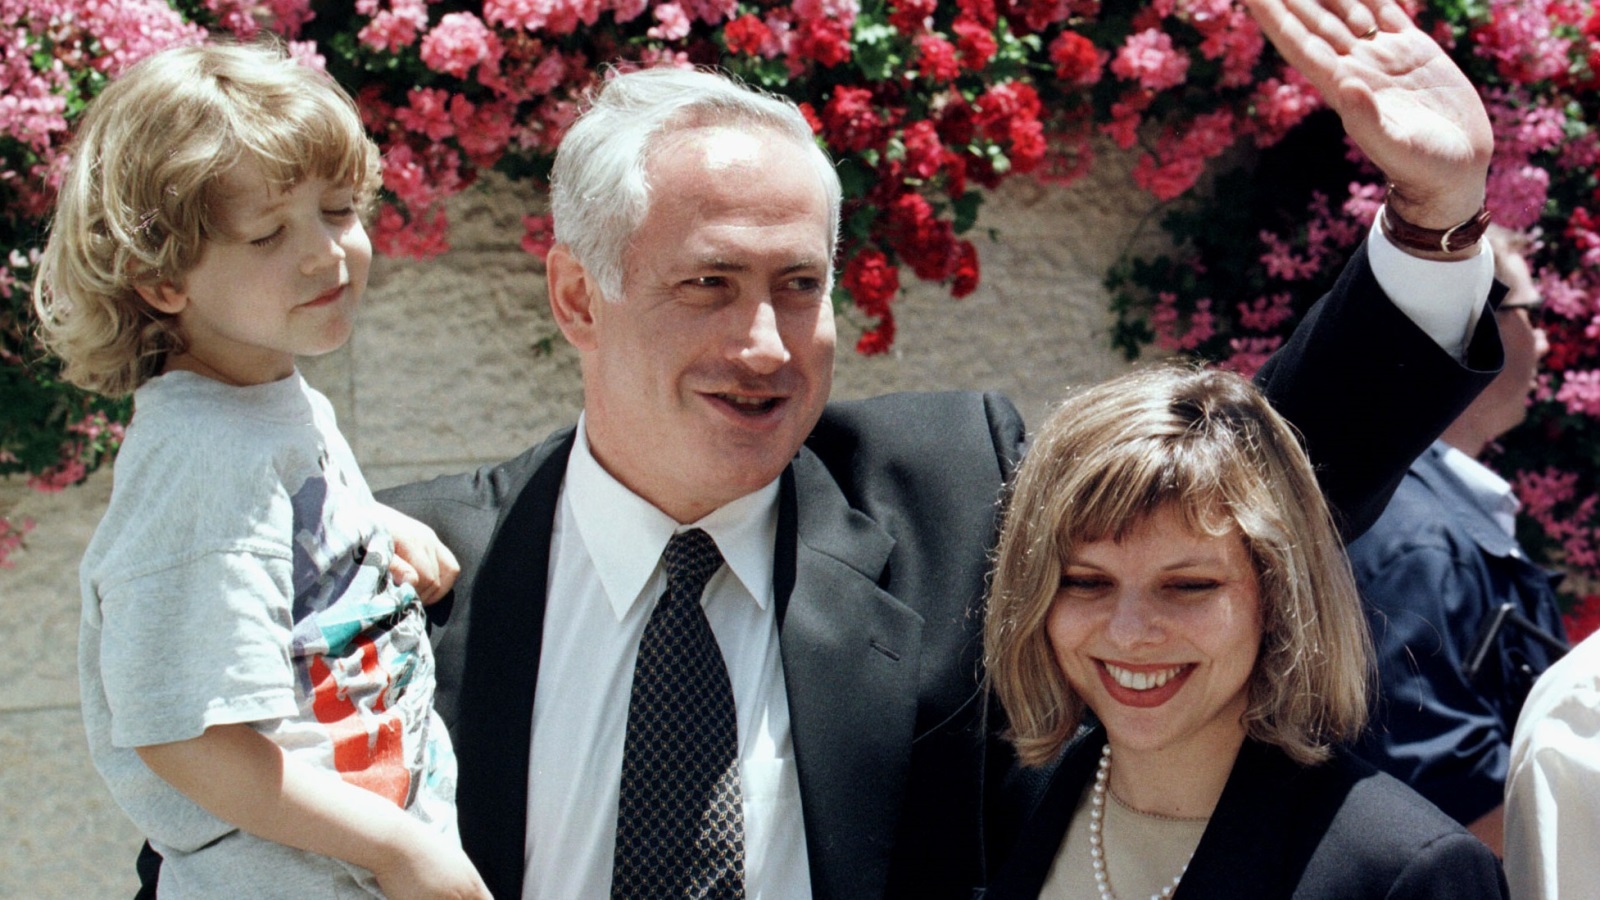 زعيم حزب الليكود بنيامين نتنياهو ترافقه زوجته سارة وابنه يائيرالقدس